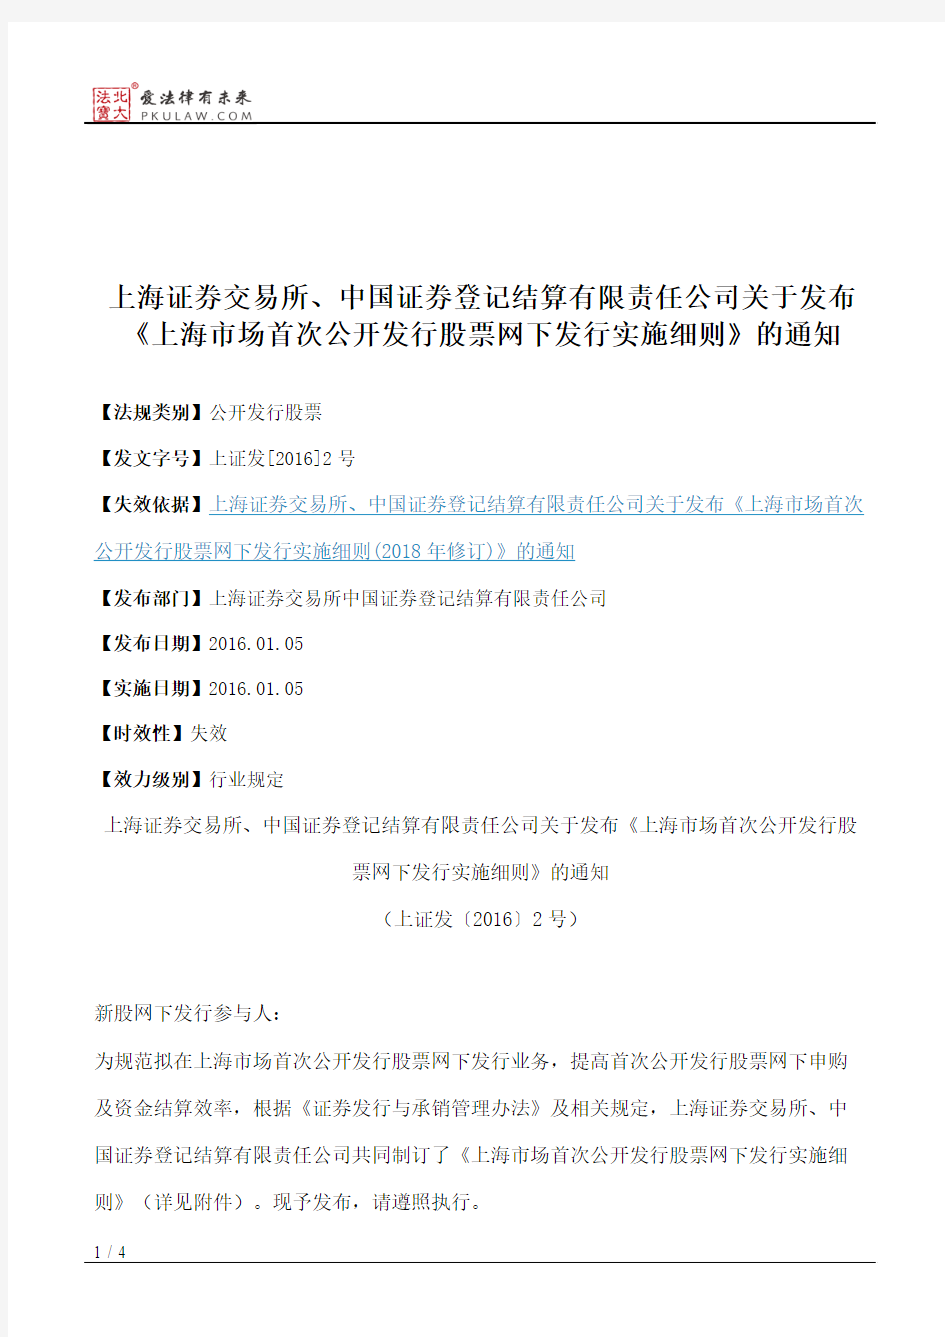 上海证券交易所、中国证券登记结算有限责任公司关于发布《上海市